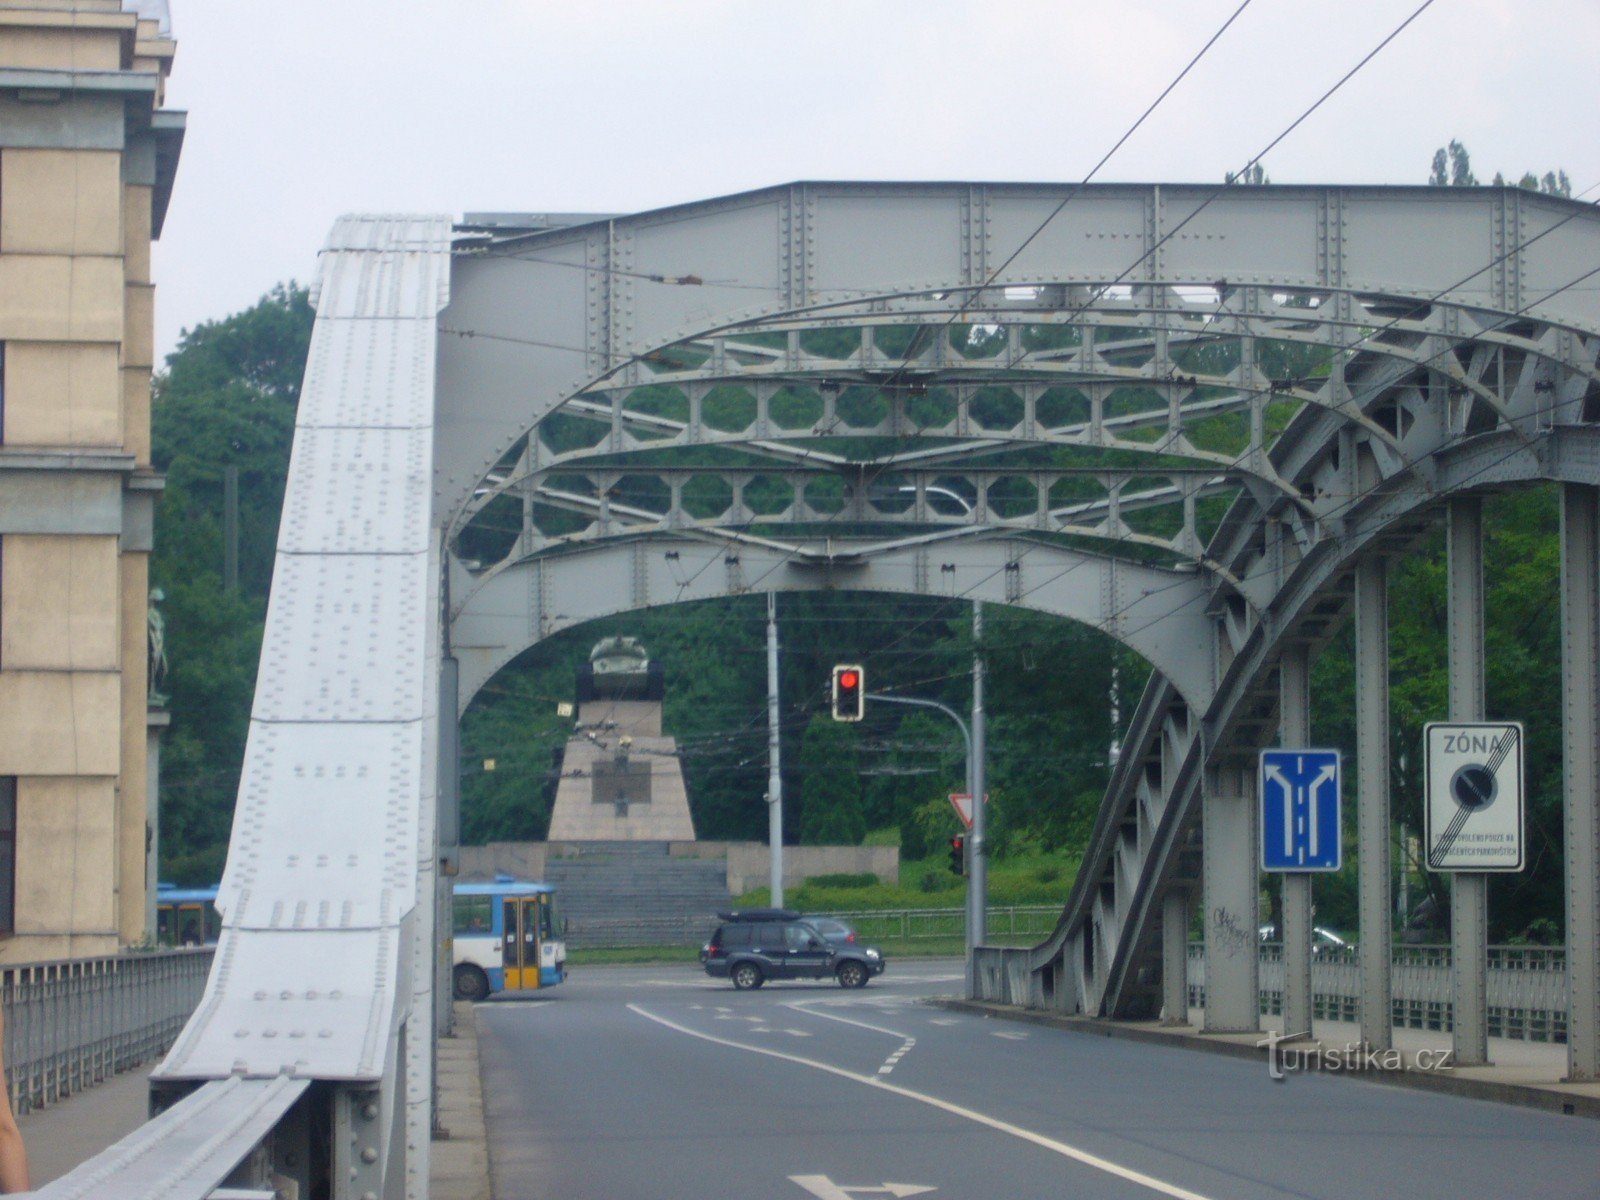 Ostrava - Miloš Sýkora bridge